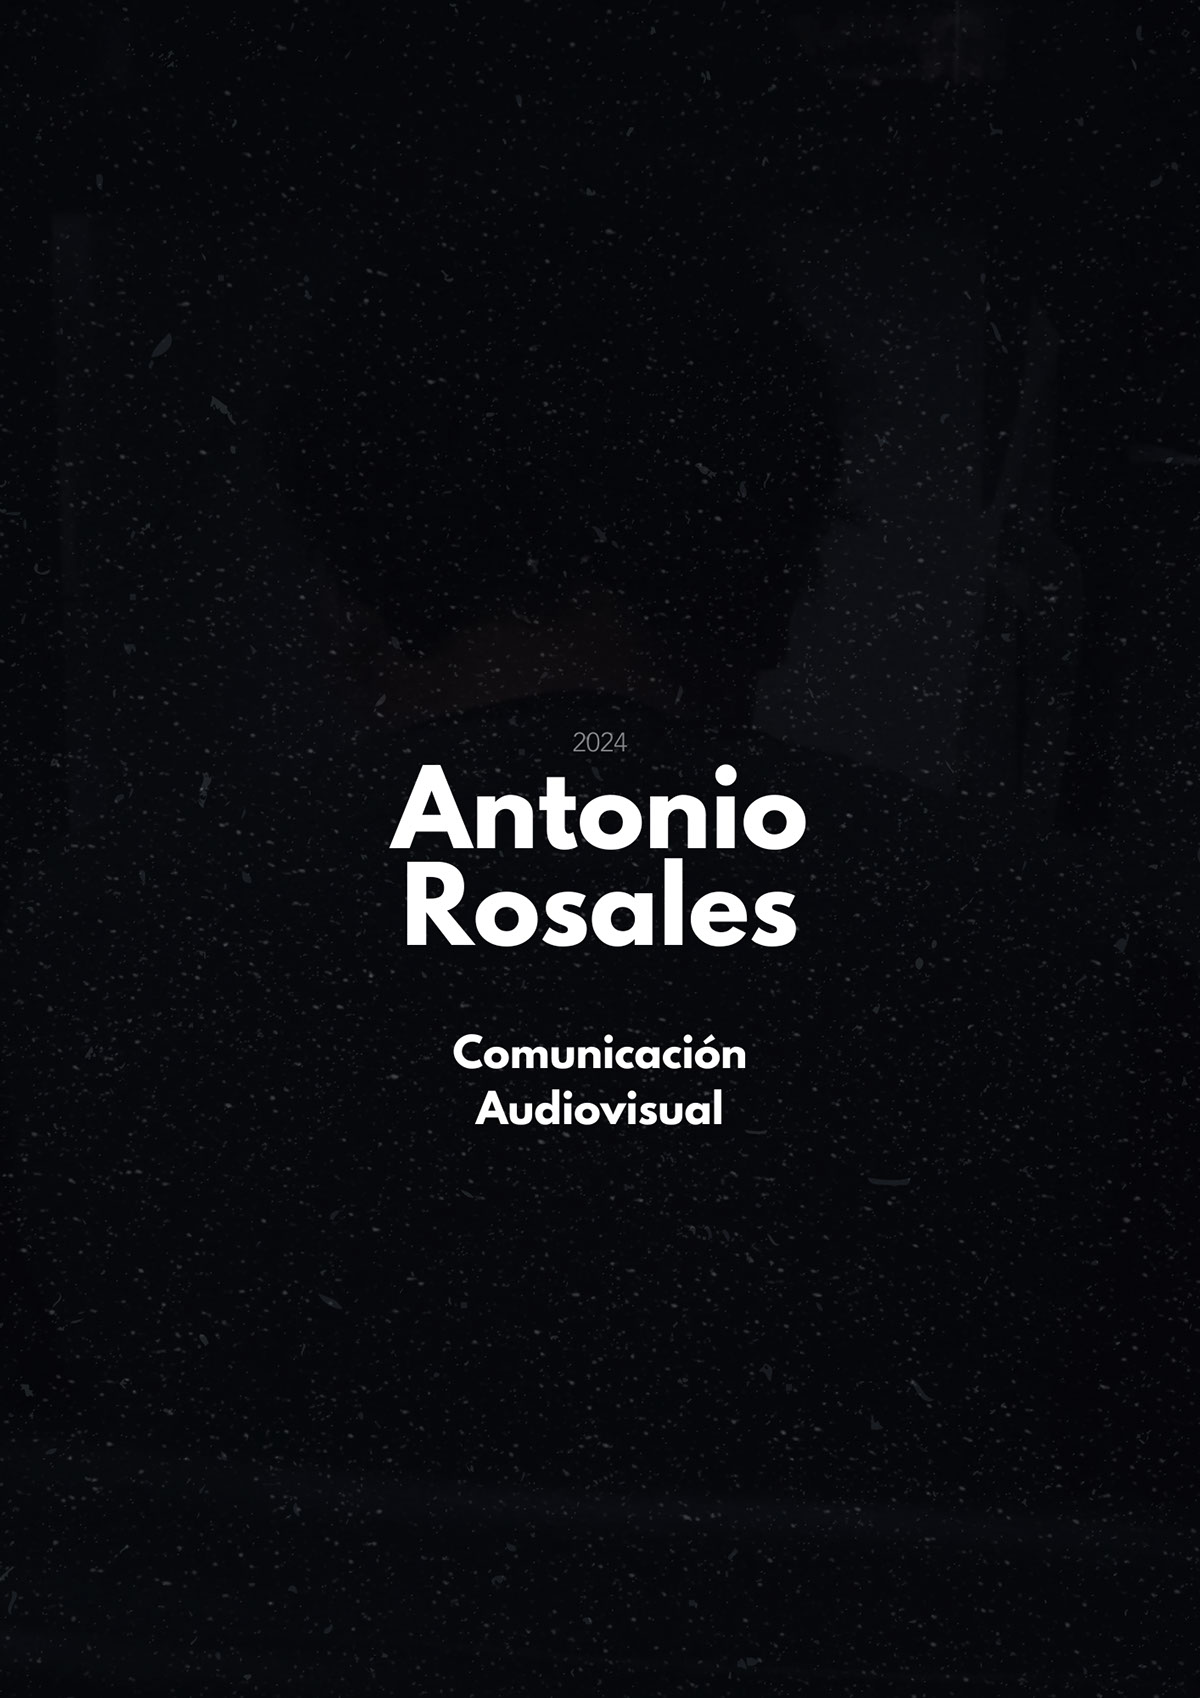 CV Antonio Rosales rendition image